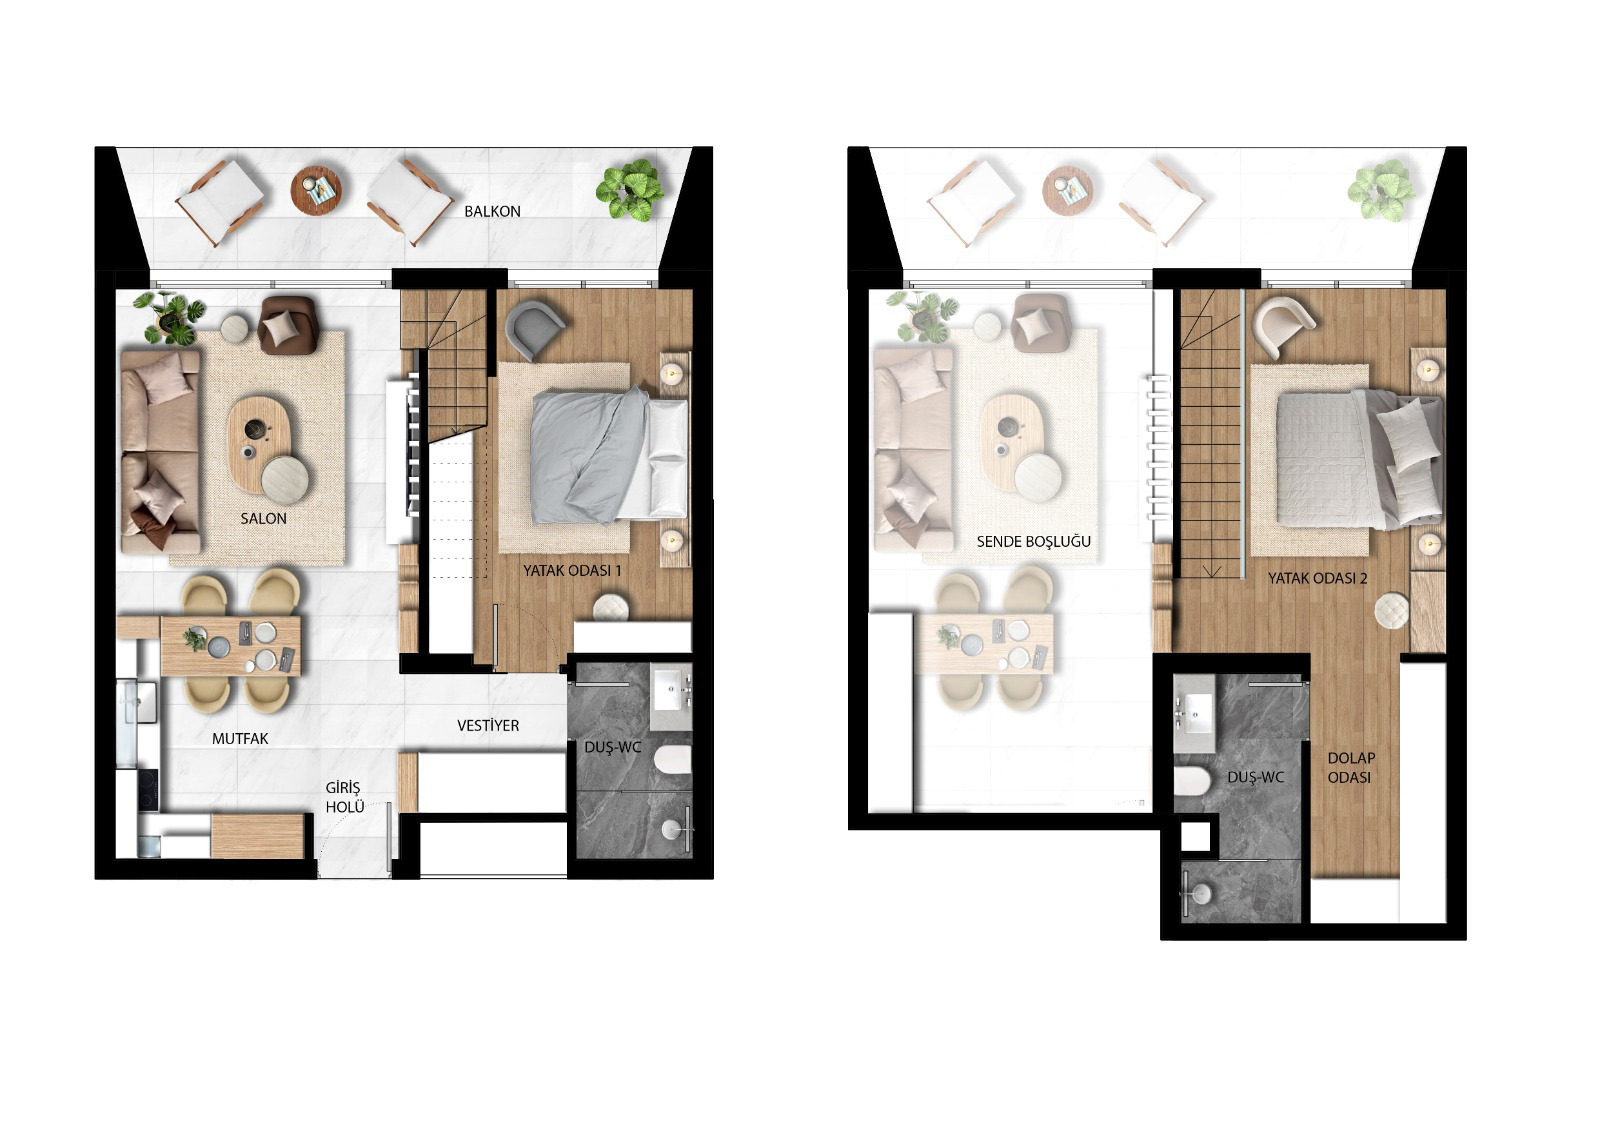 Floor Plan - Two bedroom duplex penthouse